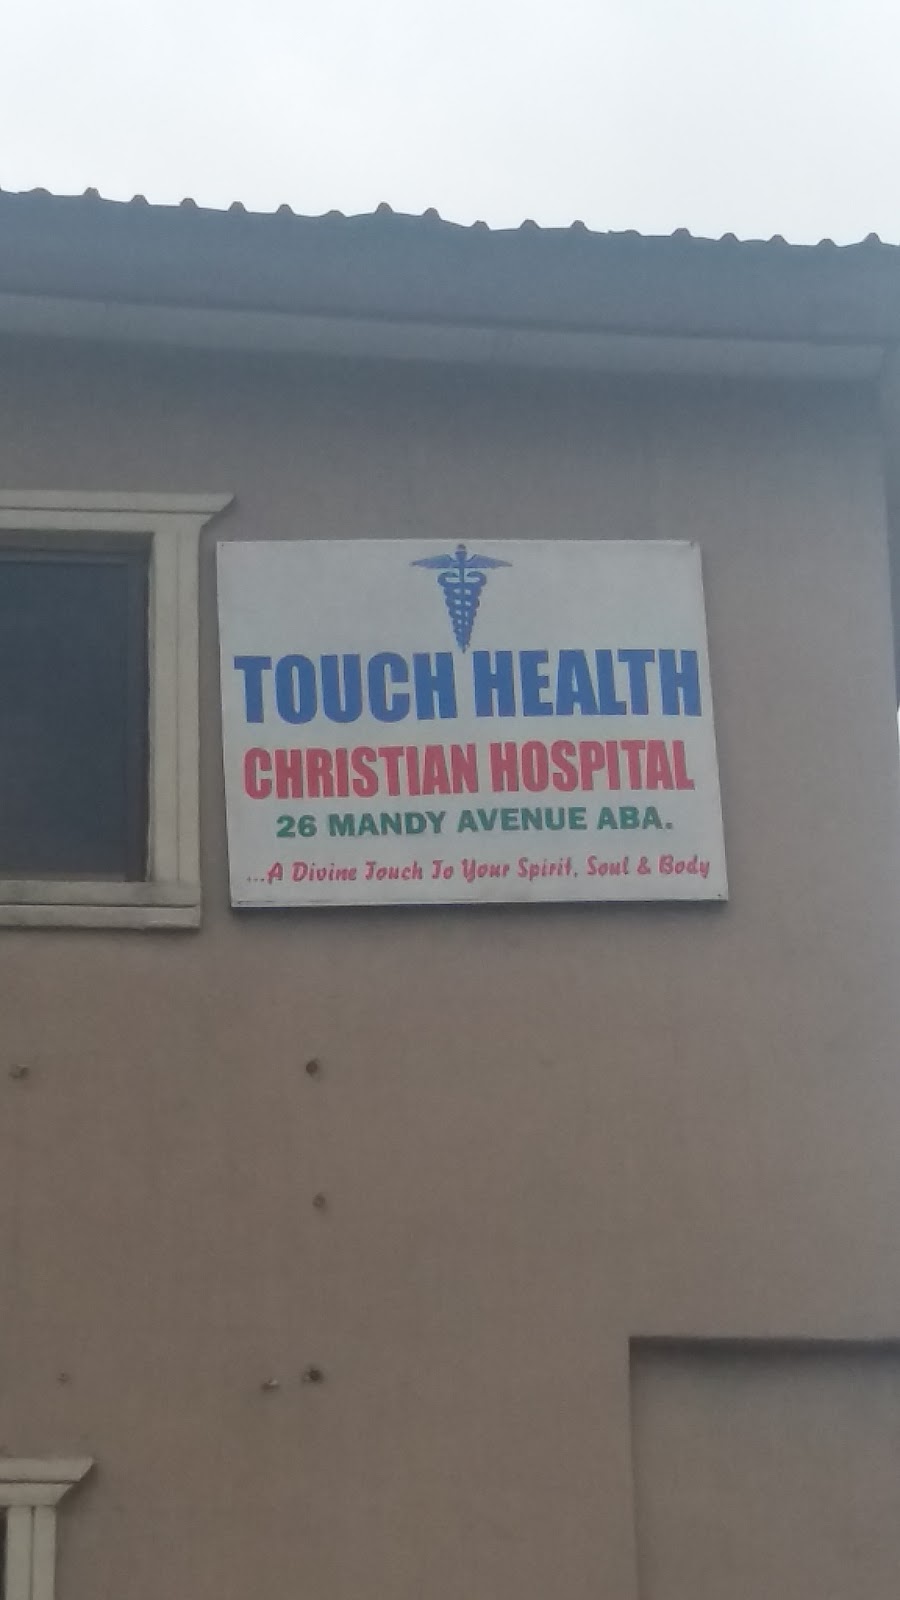 Touch Health Christian Hospital